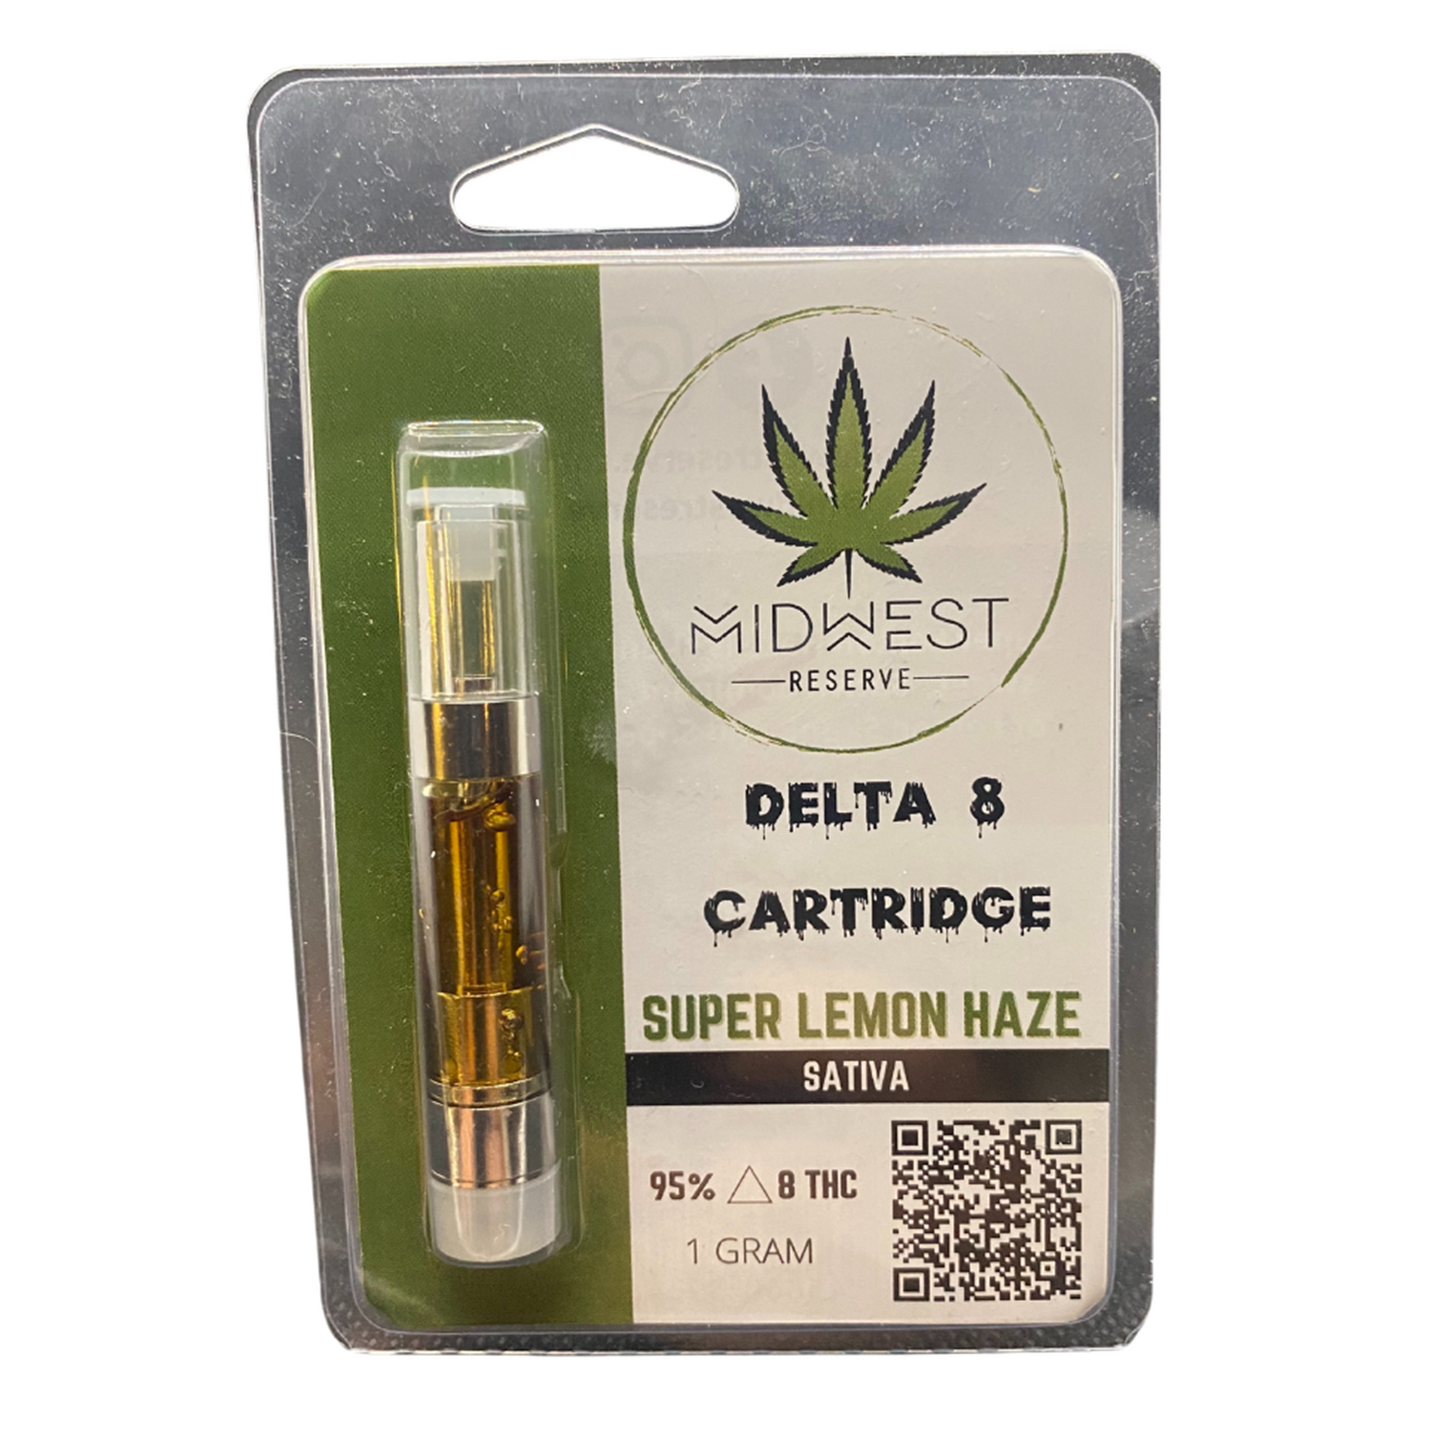 Delta 8 Cartridge